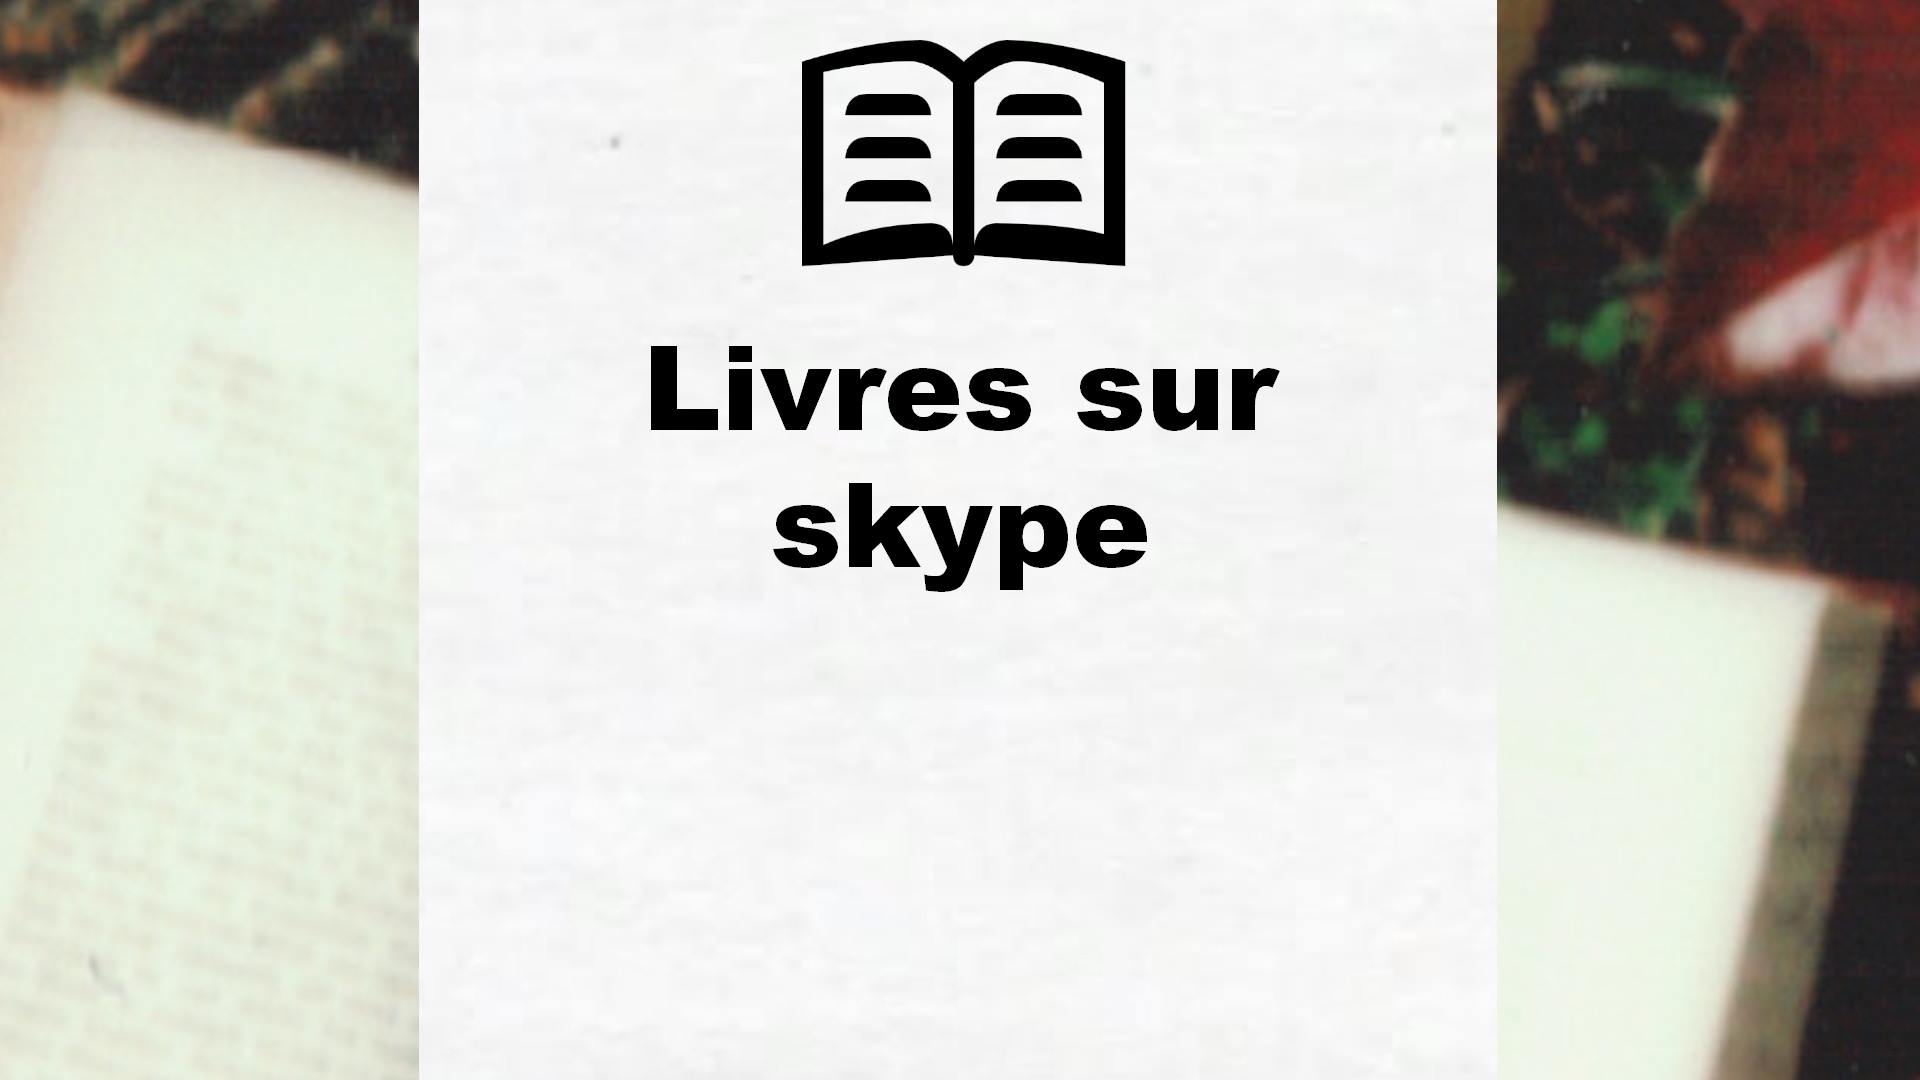 Livres sur skype